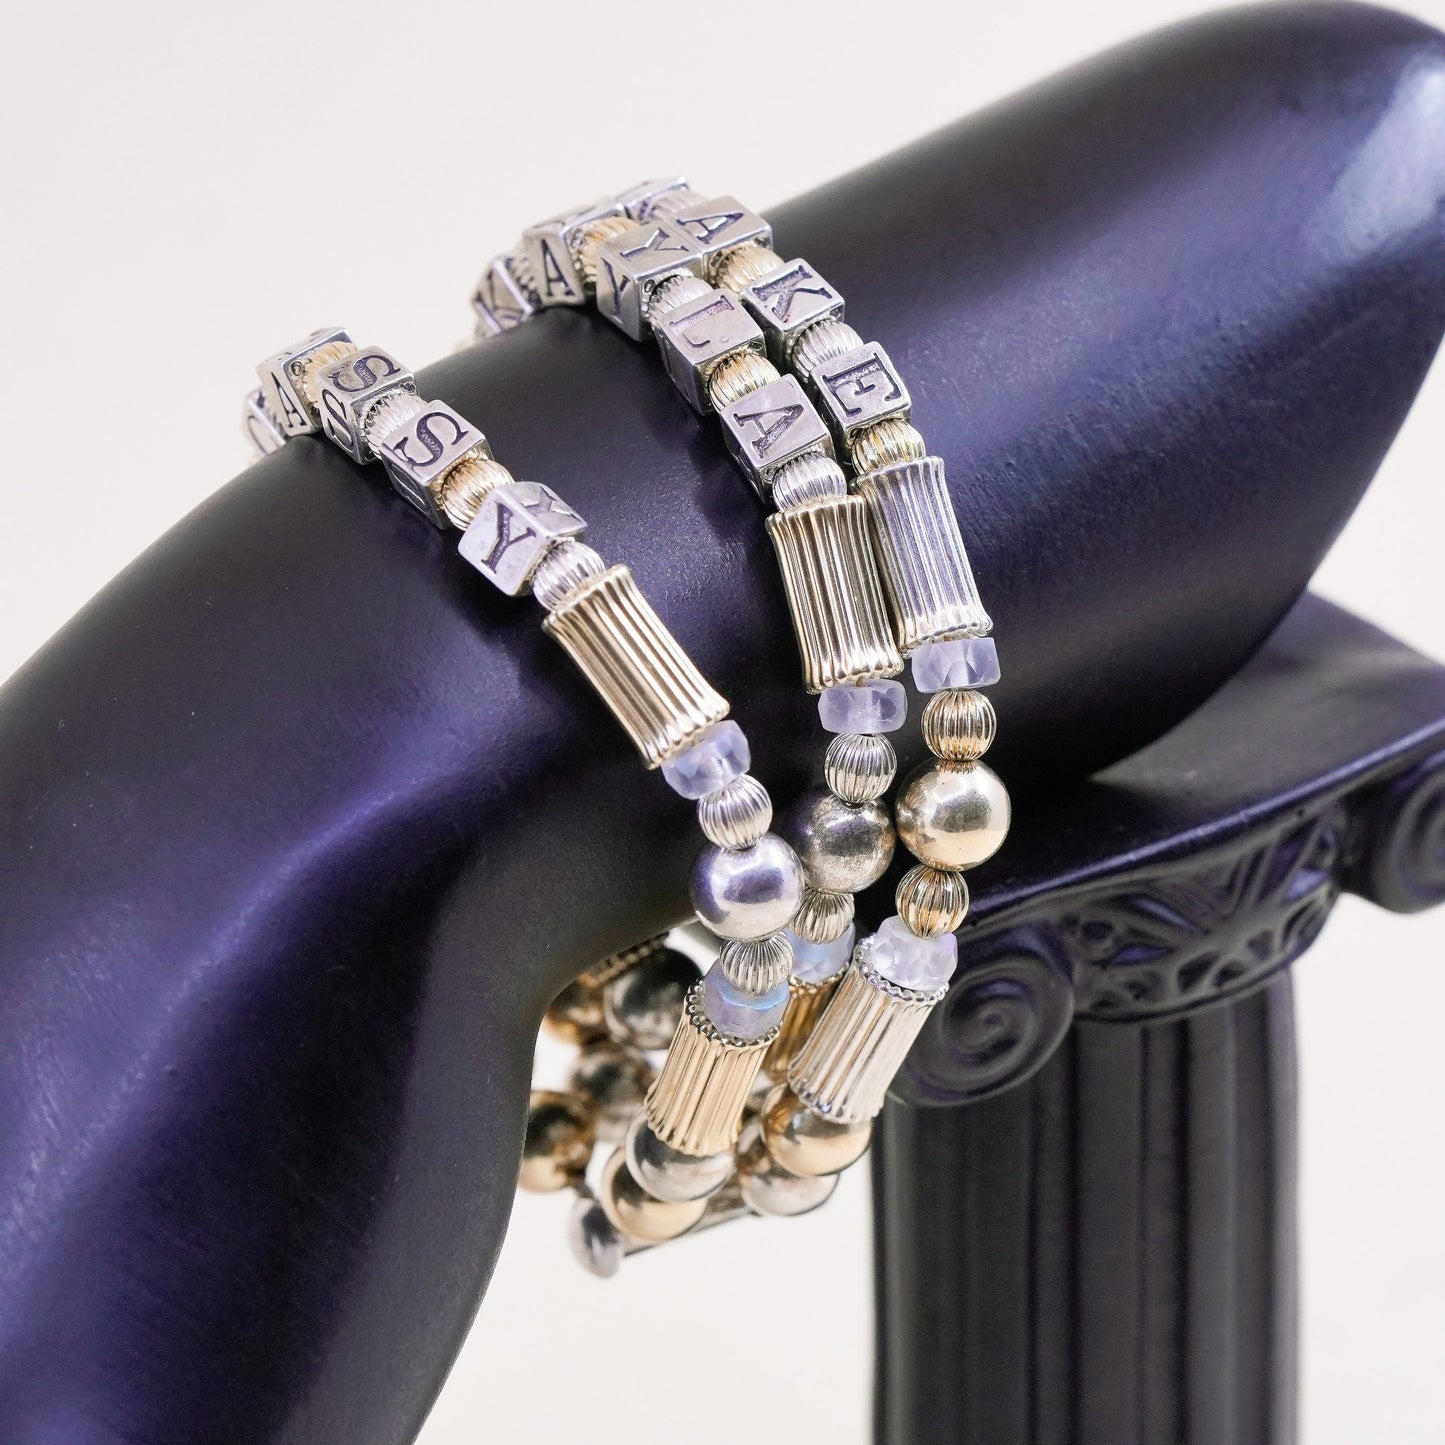 6.25”, 14K gold beads with Sterling 925 Silver bracelet name “Kayla Blake Casdy